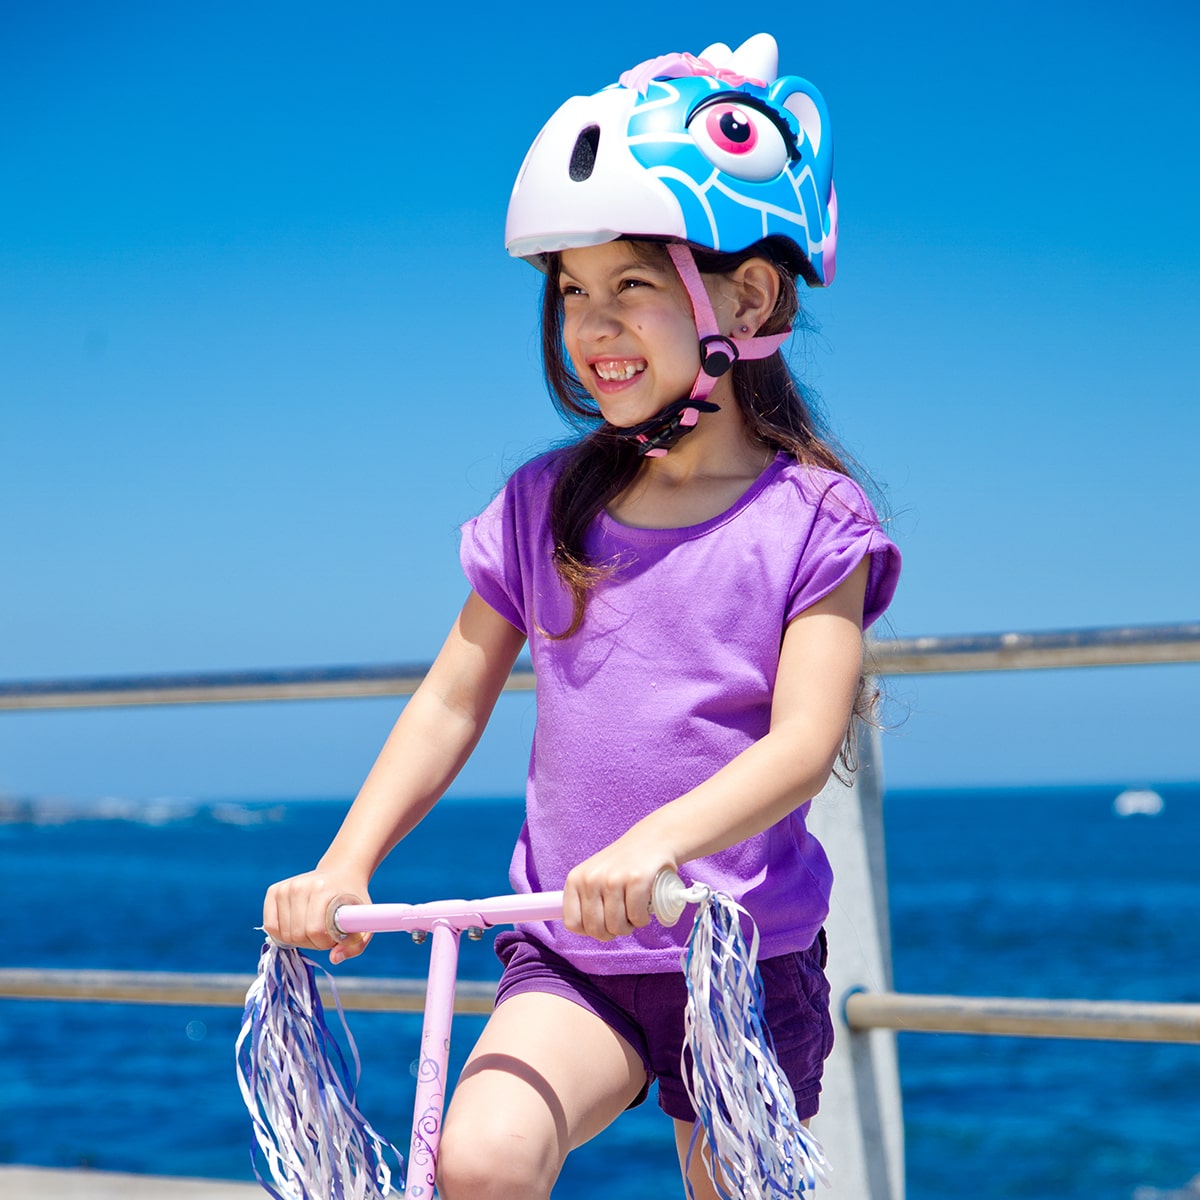 Capacete De Bicicleta Para Crianças|girafa Azul|crazy Safety|certificado En1078 - Dê aos seus filhos uma vantagem com um capacete memorável. Serve para 2-7 anos (S - 49-55 cm) & 6-12 anos (M - 54-59 cm). Luz LED vermelha. Testado e certificado. | Sport Zone MKP